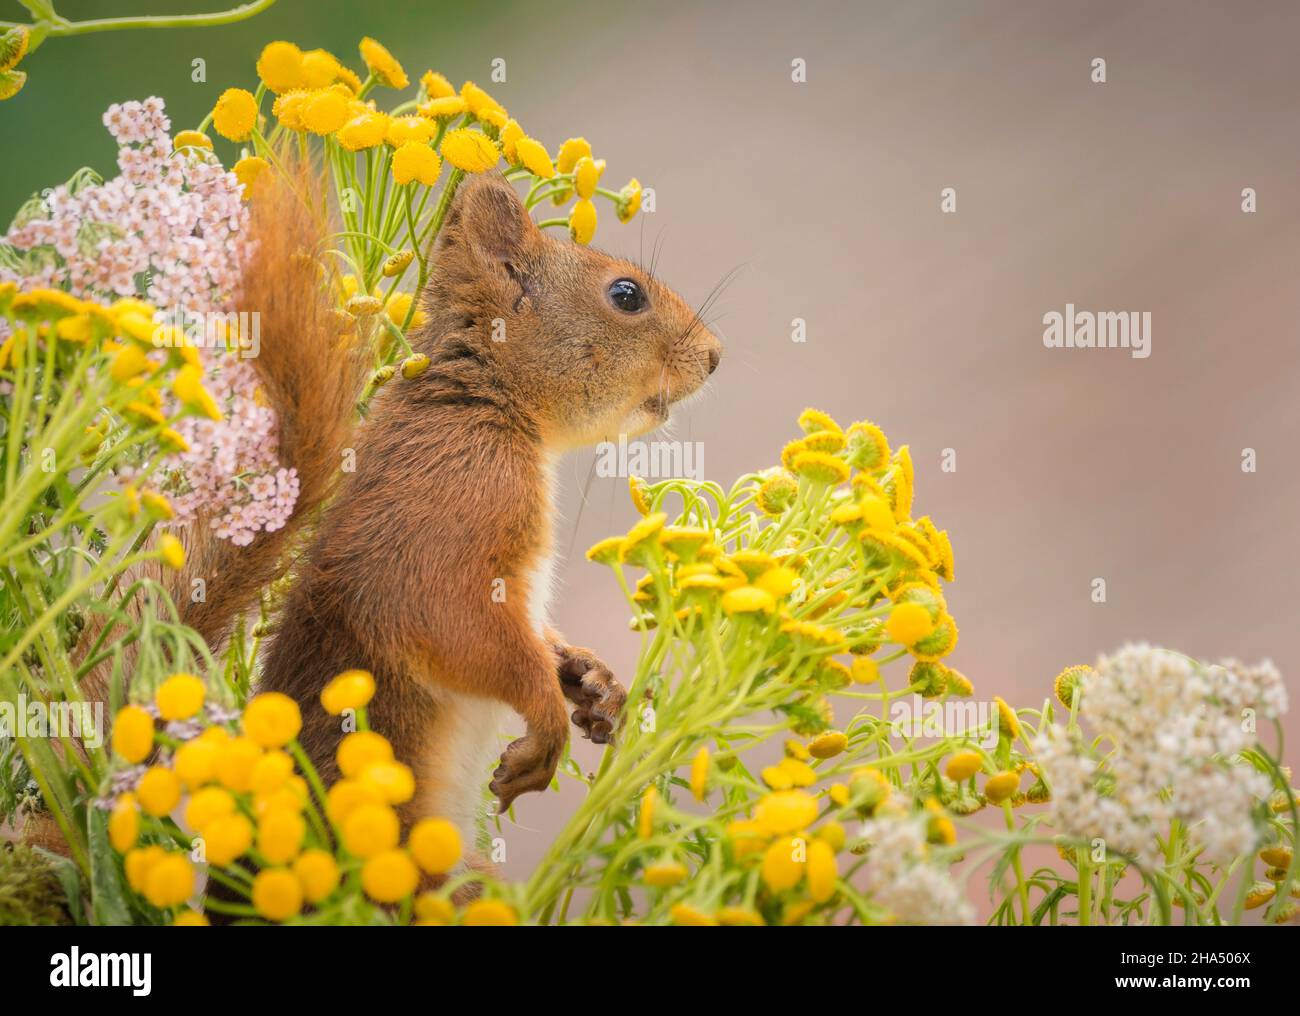 Nahaufnahme eines roten Eichhörnchens, das zwischen gelben Blüten steht und nach oben schaut Stockfoto